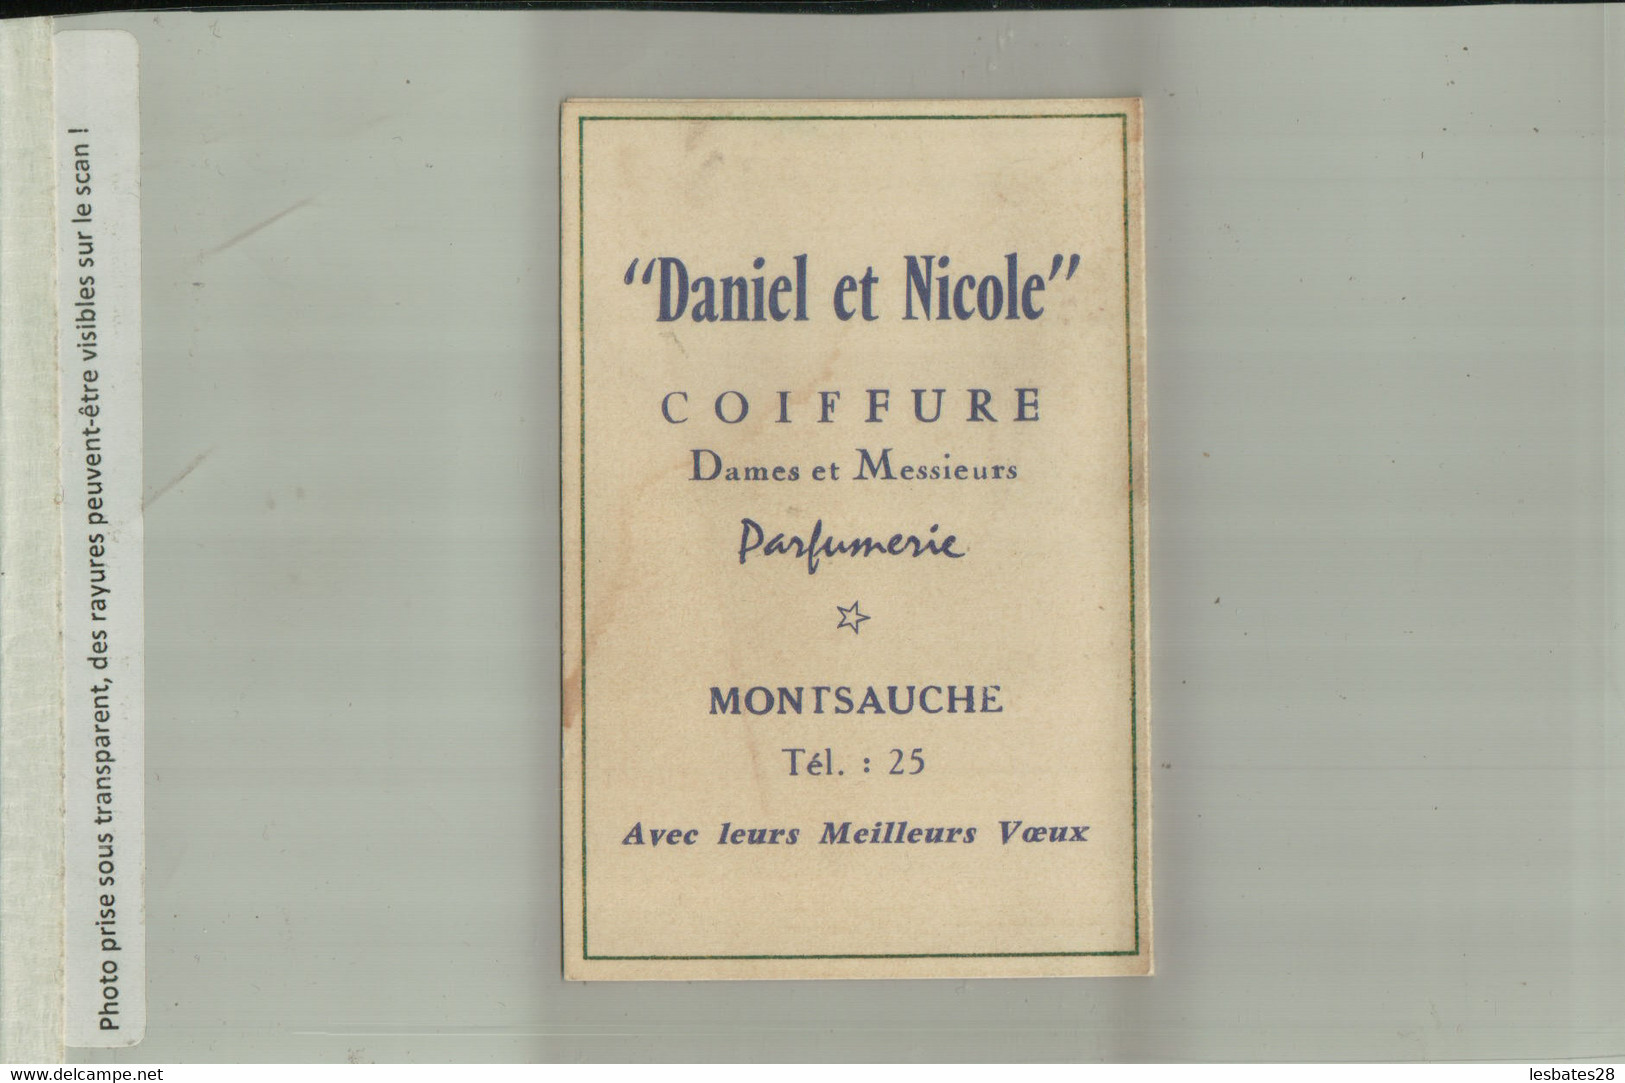 PARFUM RAMAGE BOURJOIS PARIS CALENDRIER 1964 Publicité  Parfumerie Coifure  MONTSAUCHE   (AVRI 2021 ABL 074) - Kleinformat : 1961-70